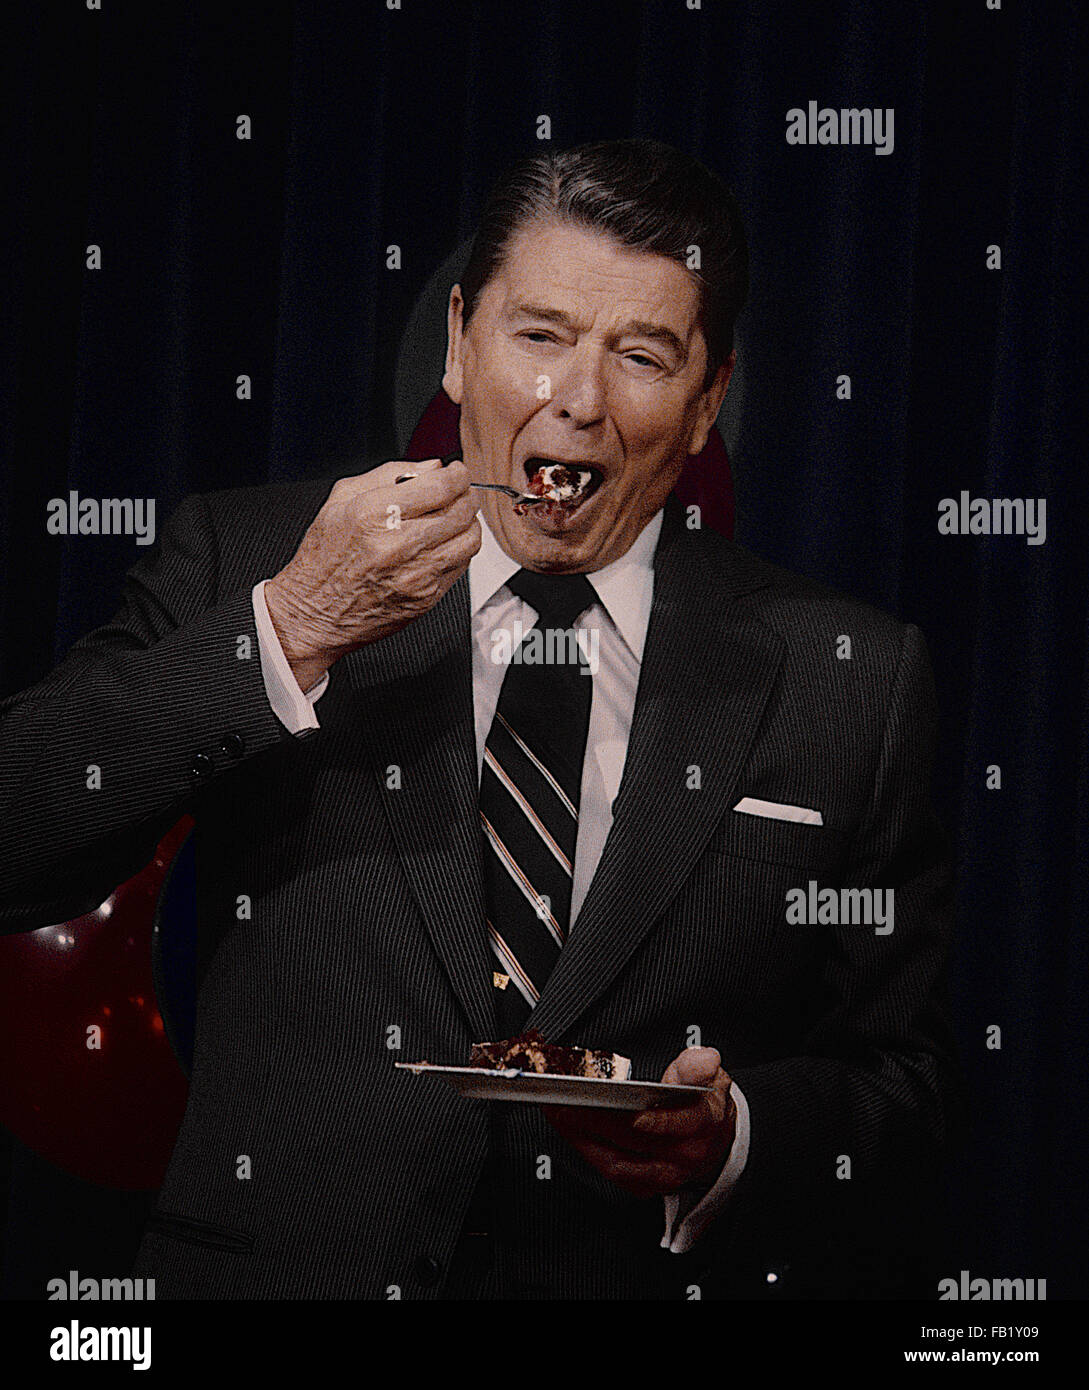 Washington, DC, USA, 6. Februar 1987 Präsident Ronald Reagan feiert seinen Geburtstag im Zimmer 450 OEOB. Genießt ein Stück Kuchen.  Bildnachweis: Mark Reinstein Stockfoto